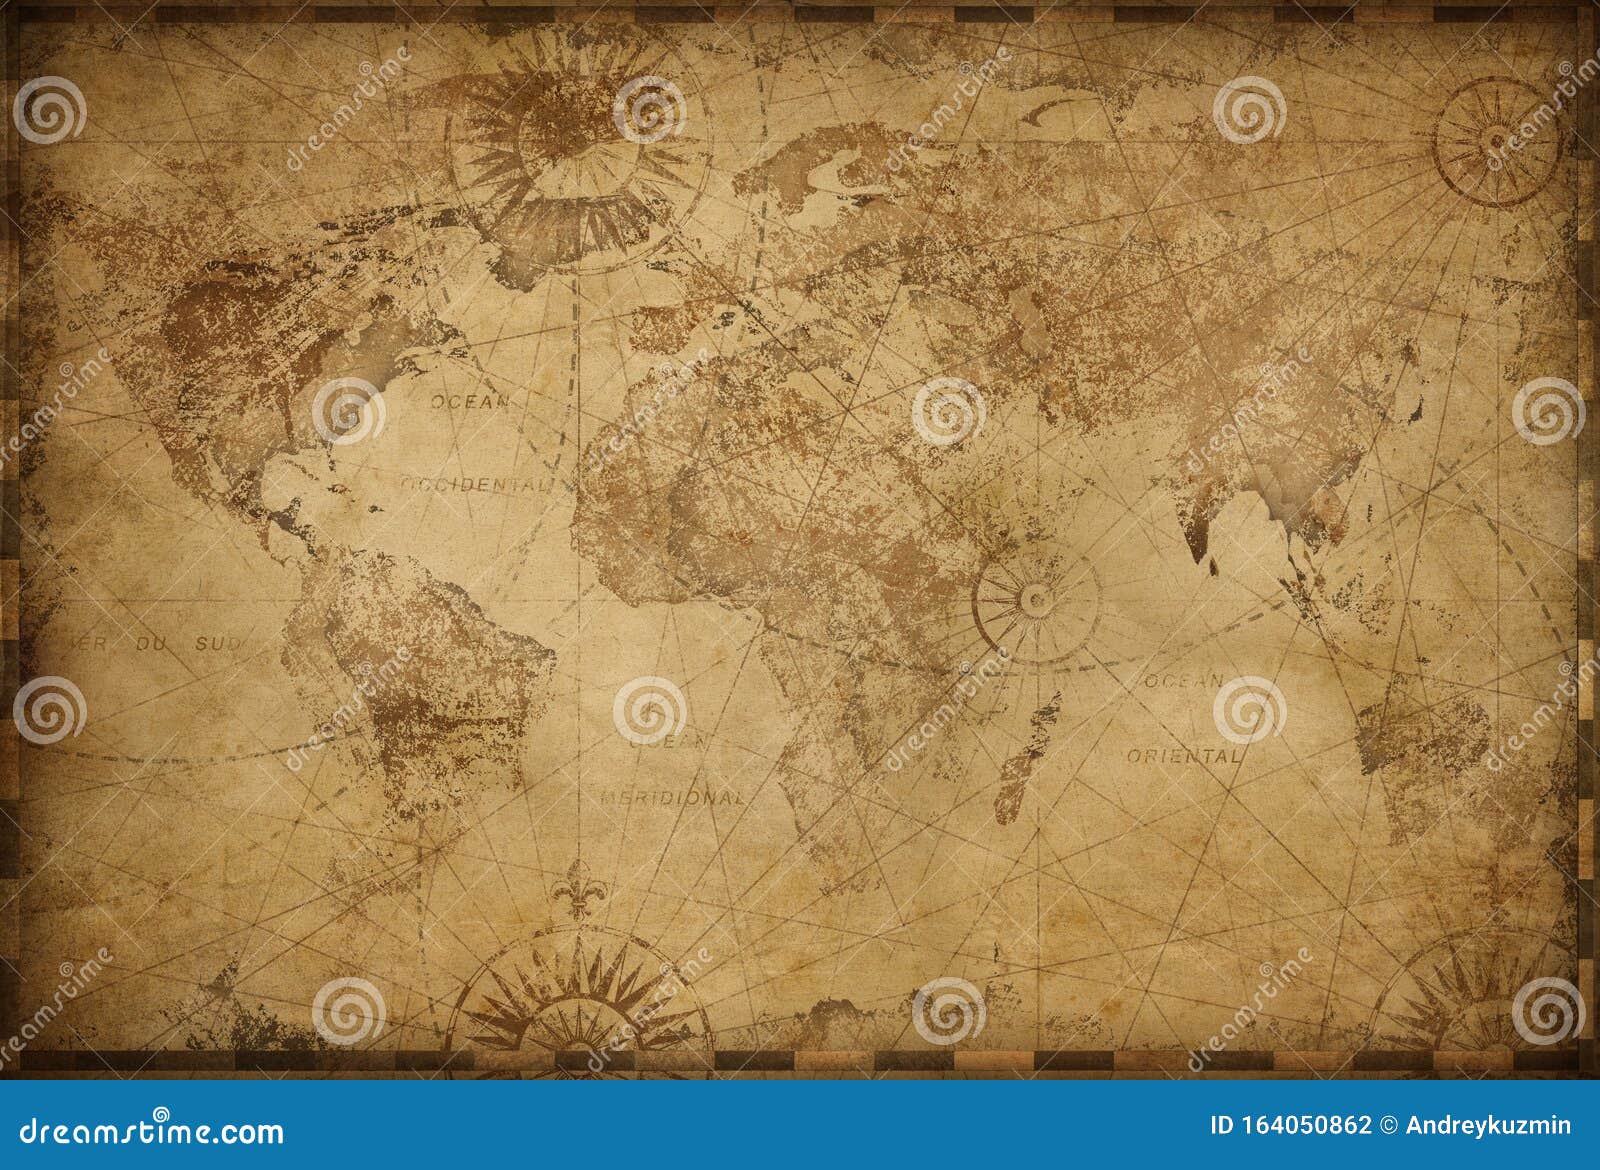 vintage old world map 